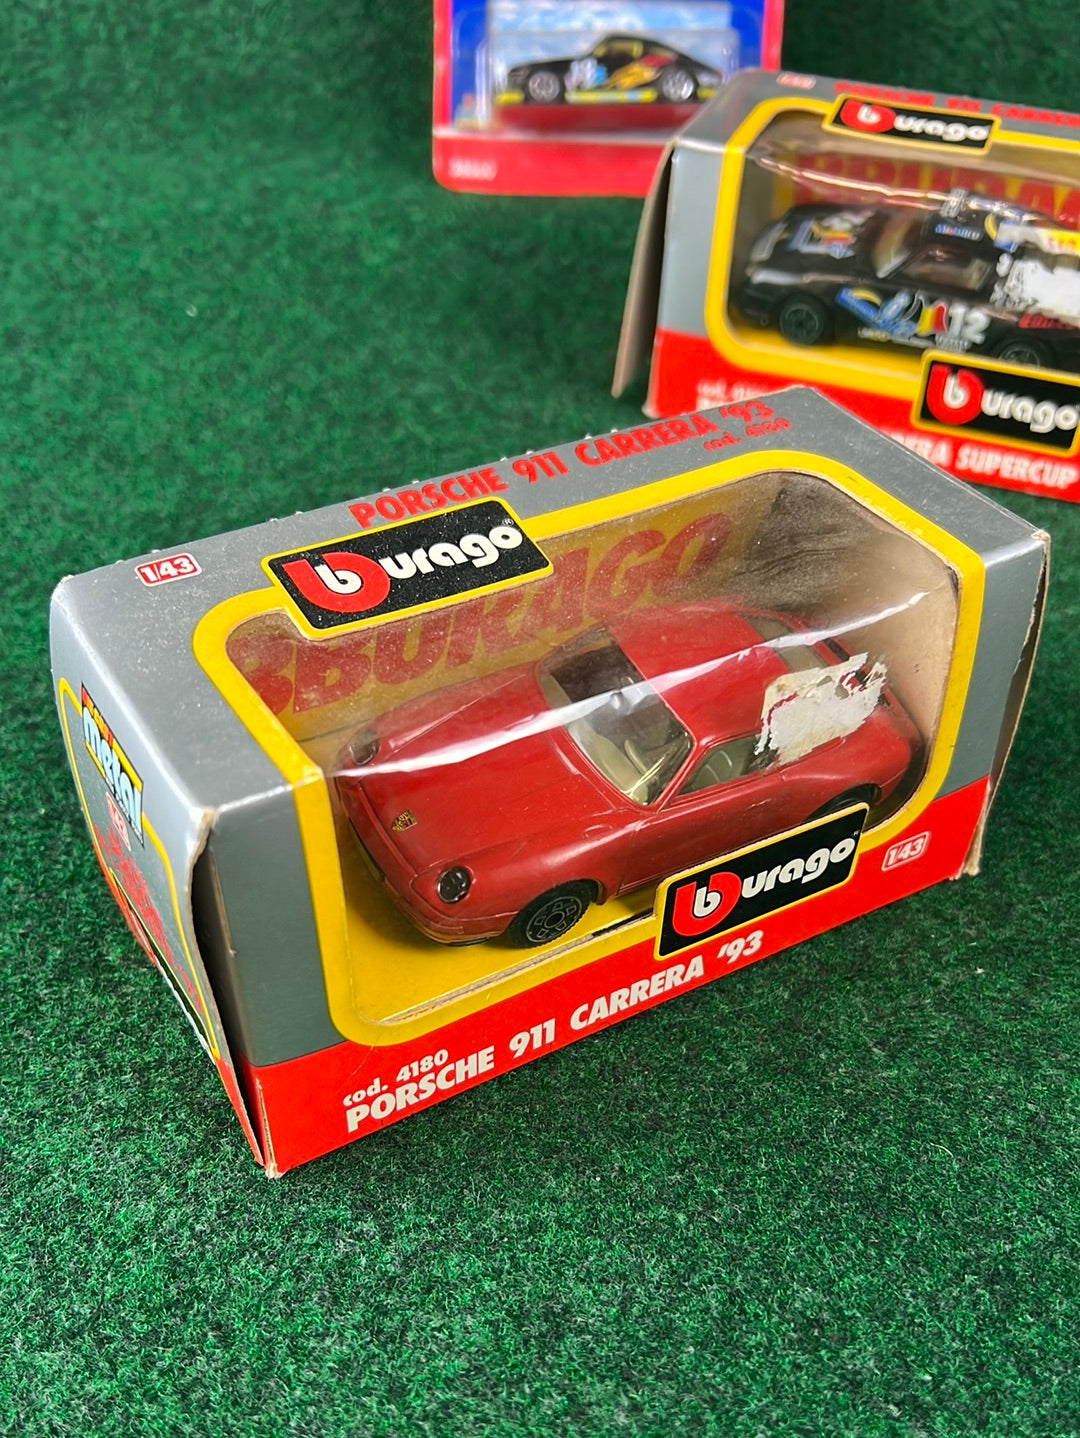 burago & Realtoy - Porsche 911 Carrera 993 Toy Car Set of 3